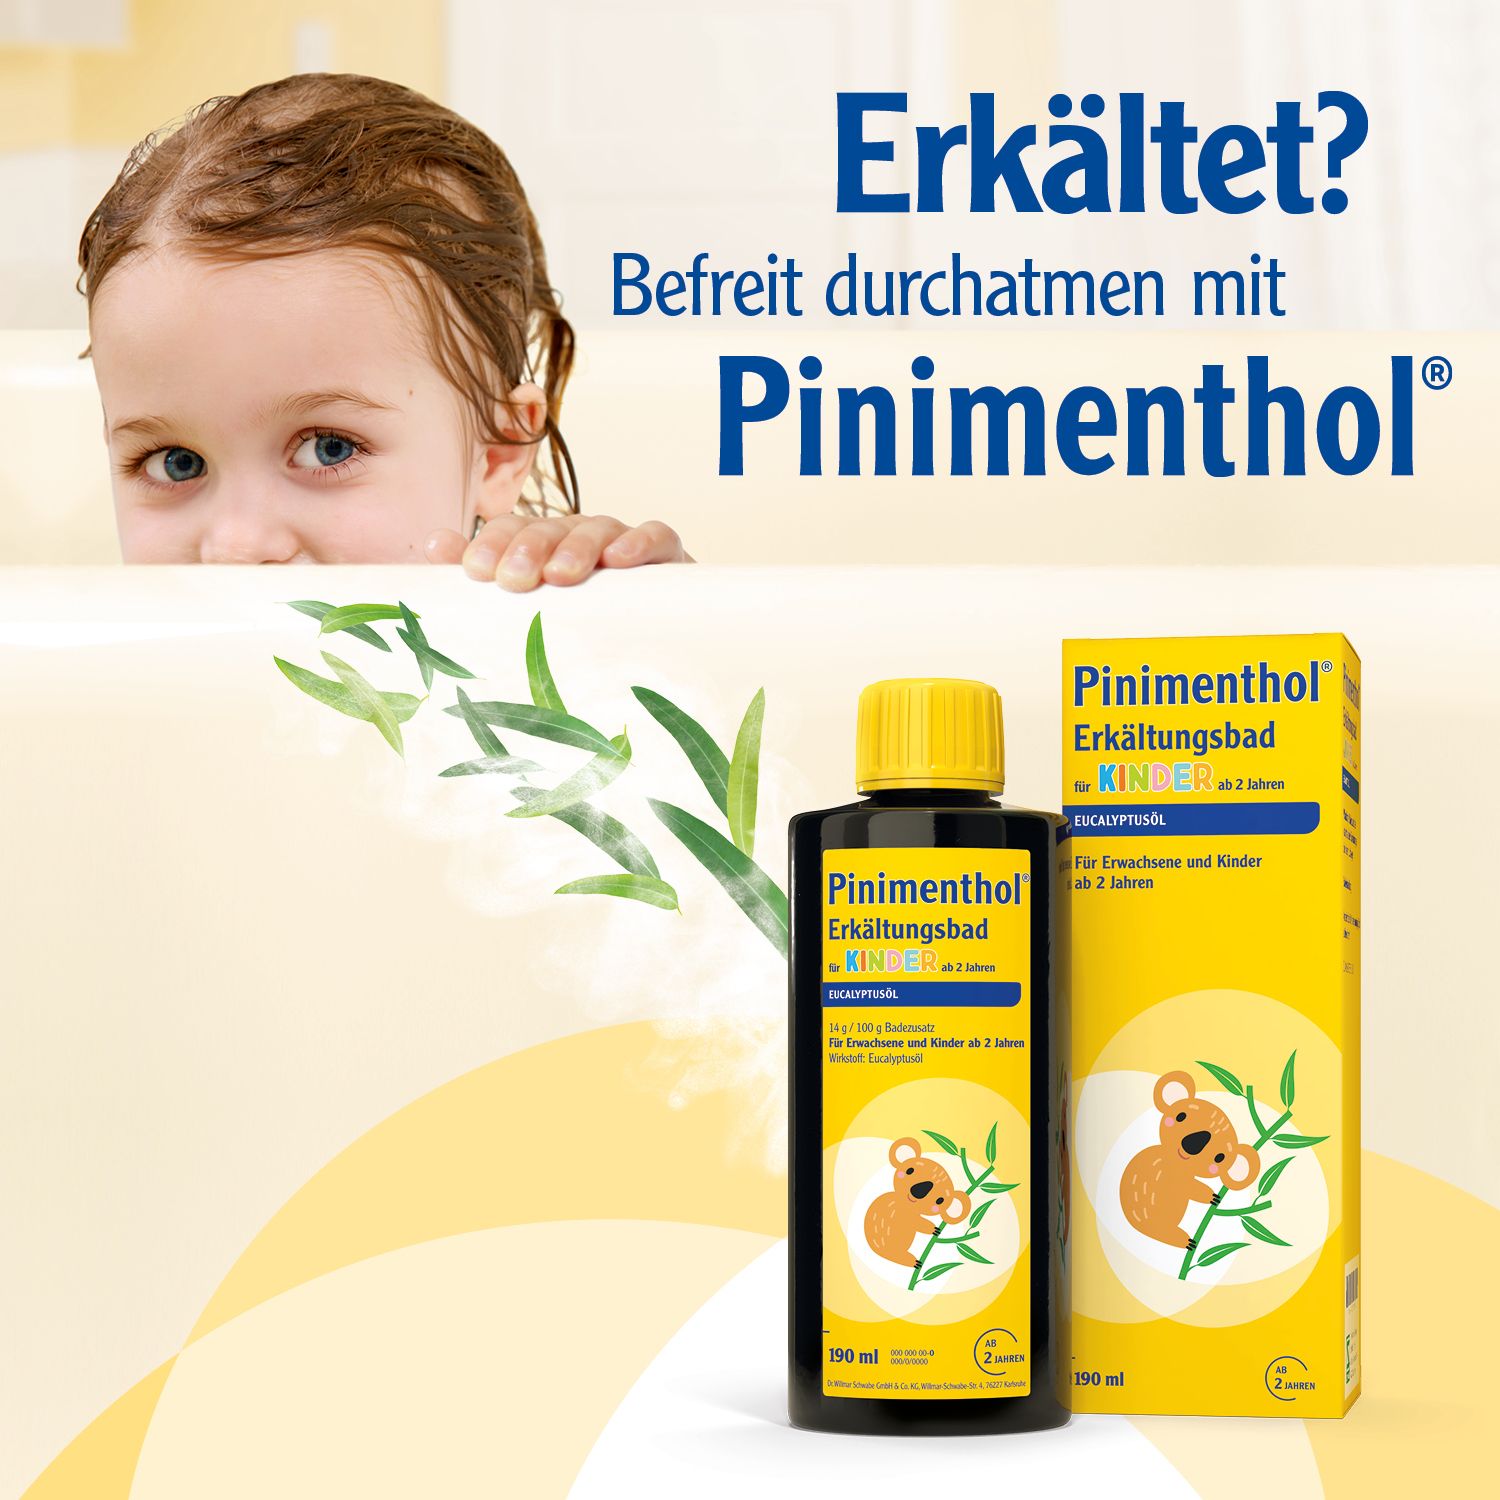 Pinimenthol® Erkältungsbad für Kinder ab 2 Jahren